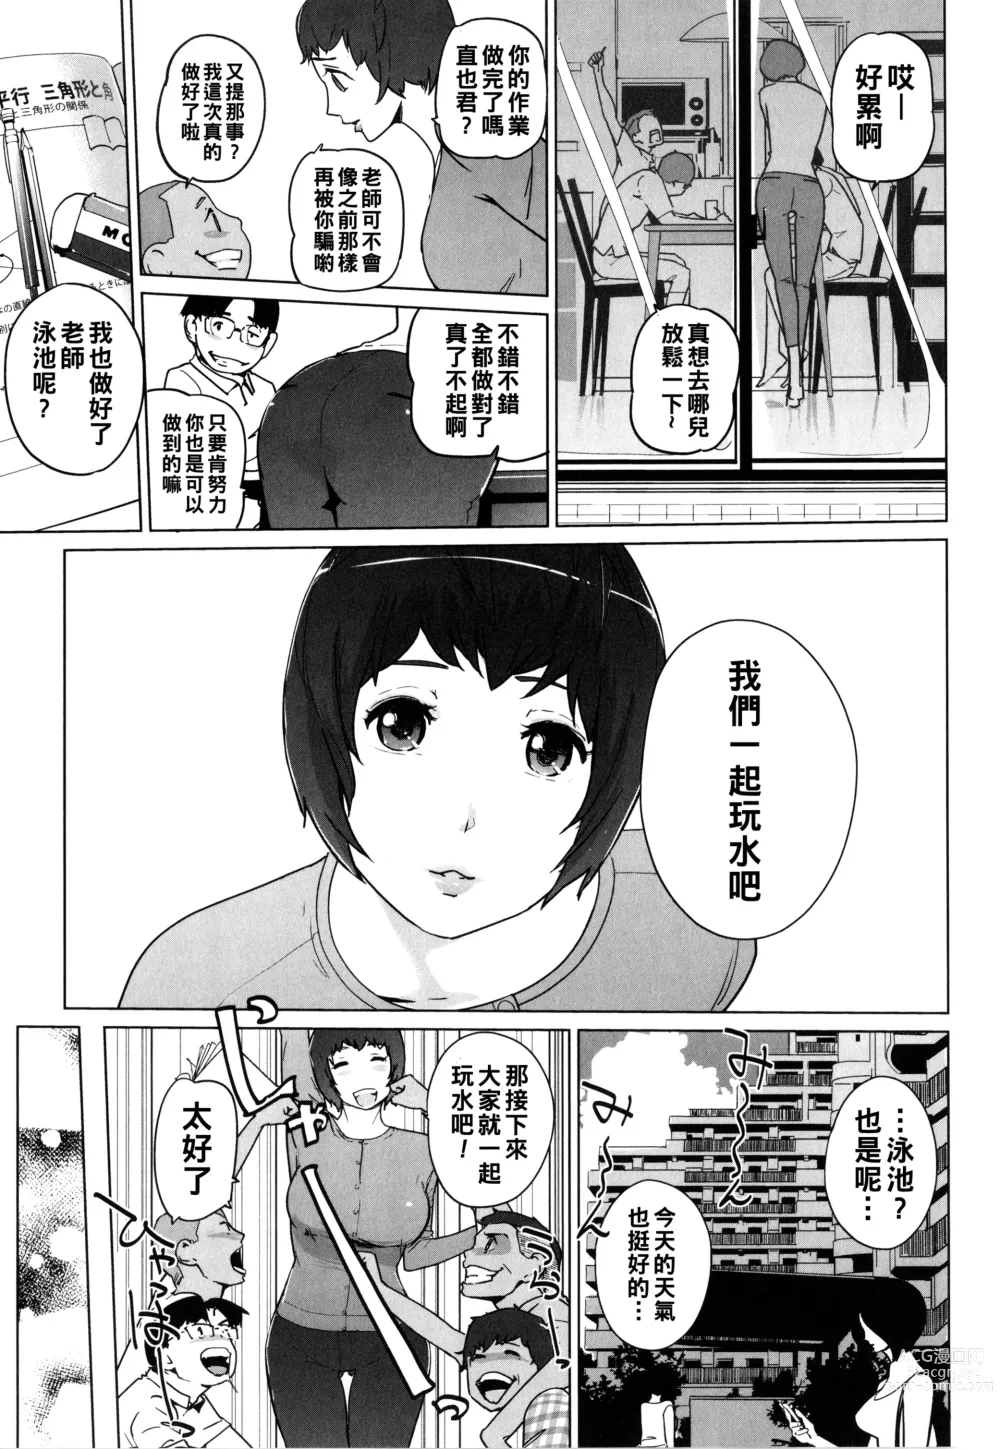 Page 20 of manga Natsu no Su